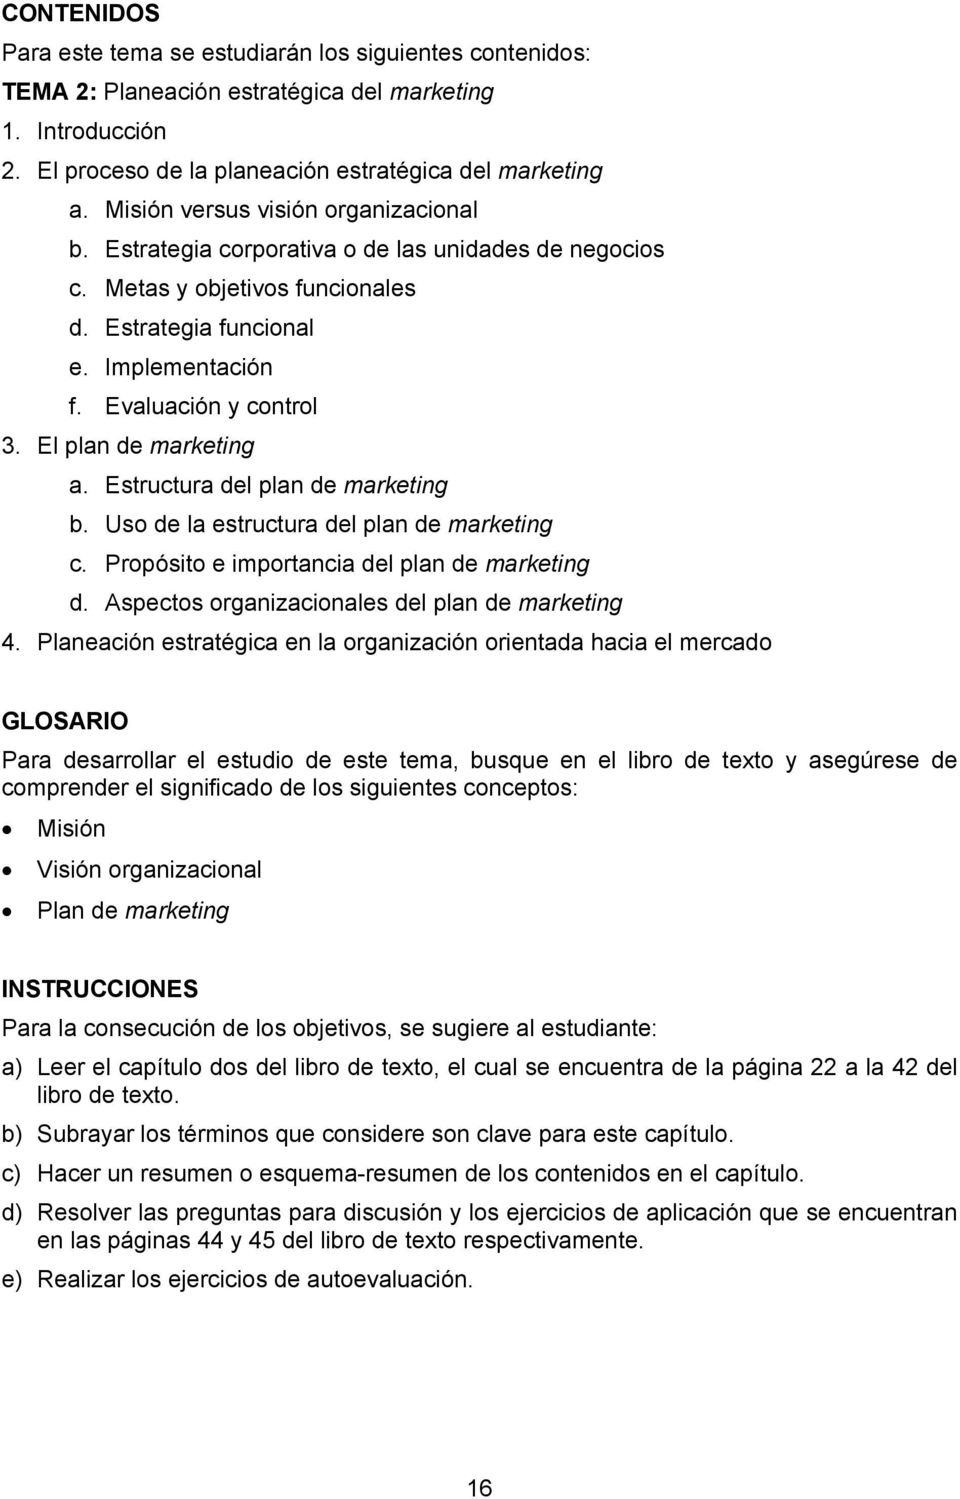 El plan de marketing a. Estructura del plan de marketing b. Uso de la estructura del plan de marketing c. Propósito e importancia del plan de marketing d.